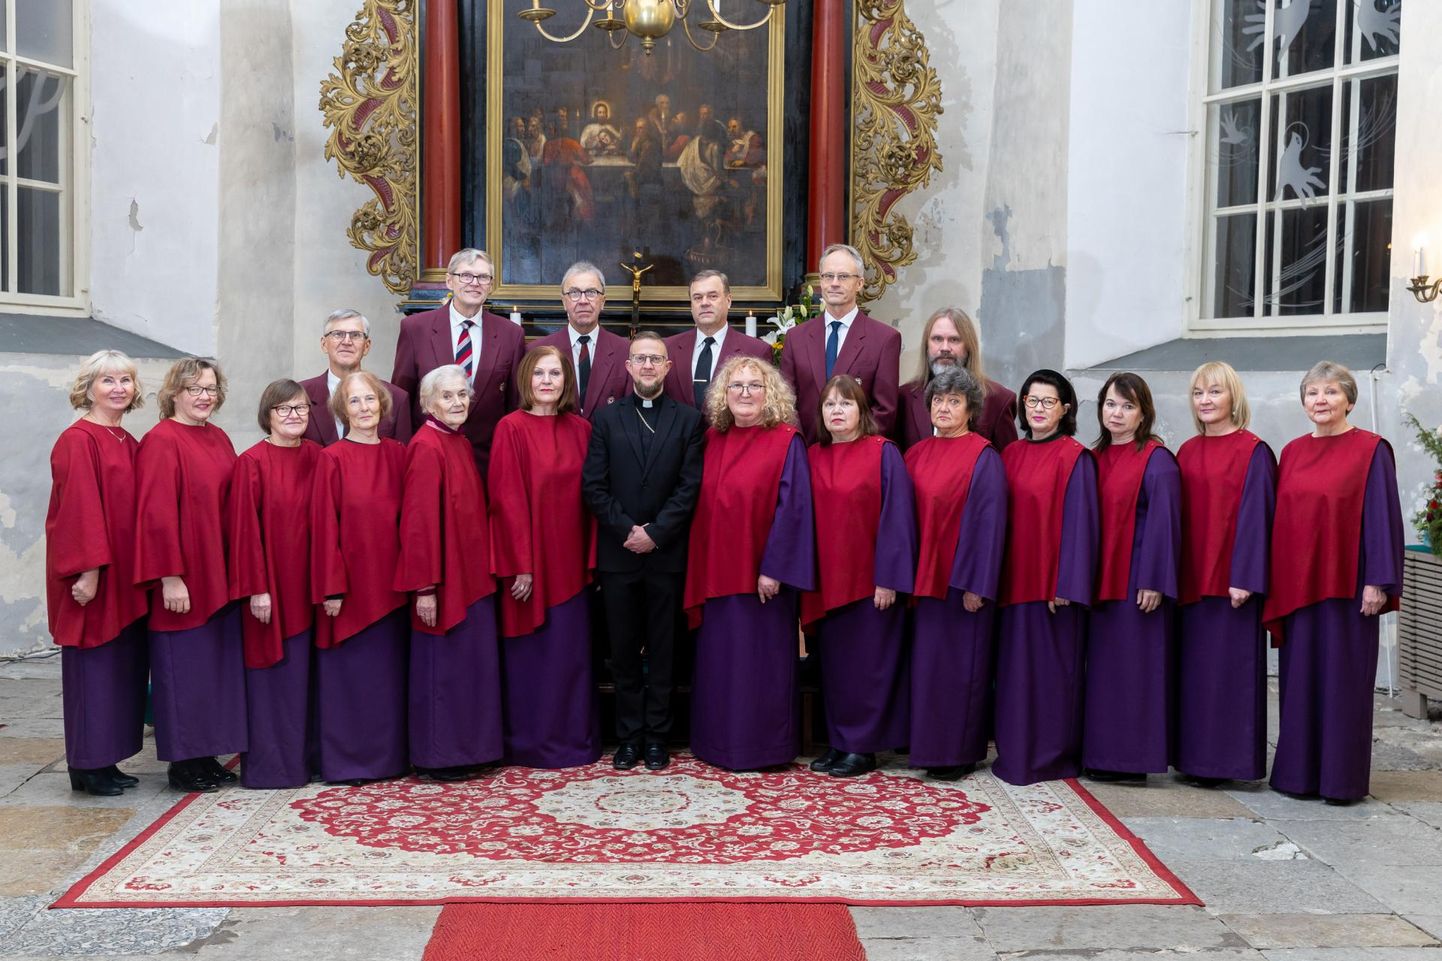 EELK Rakvere Kolmainu koguduse koor tähistab piduliku kontserdiga esmamainimise 155. aastapäeva, ent koori ajalugu võib olla hoopis pikem.